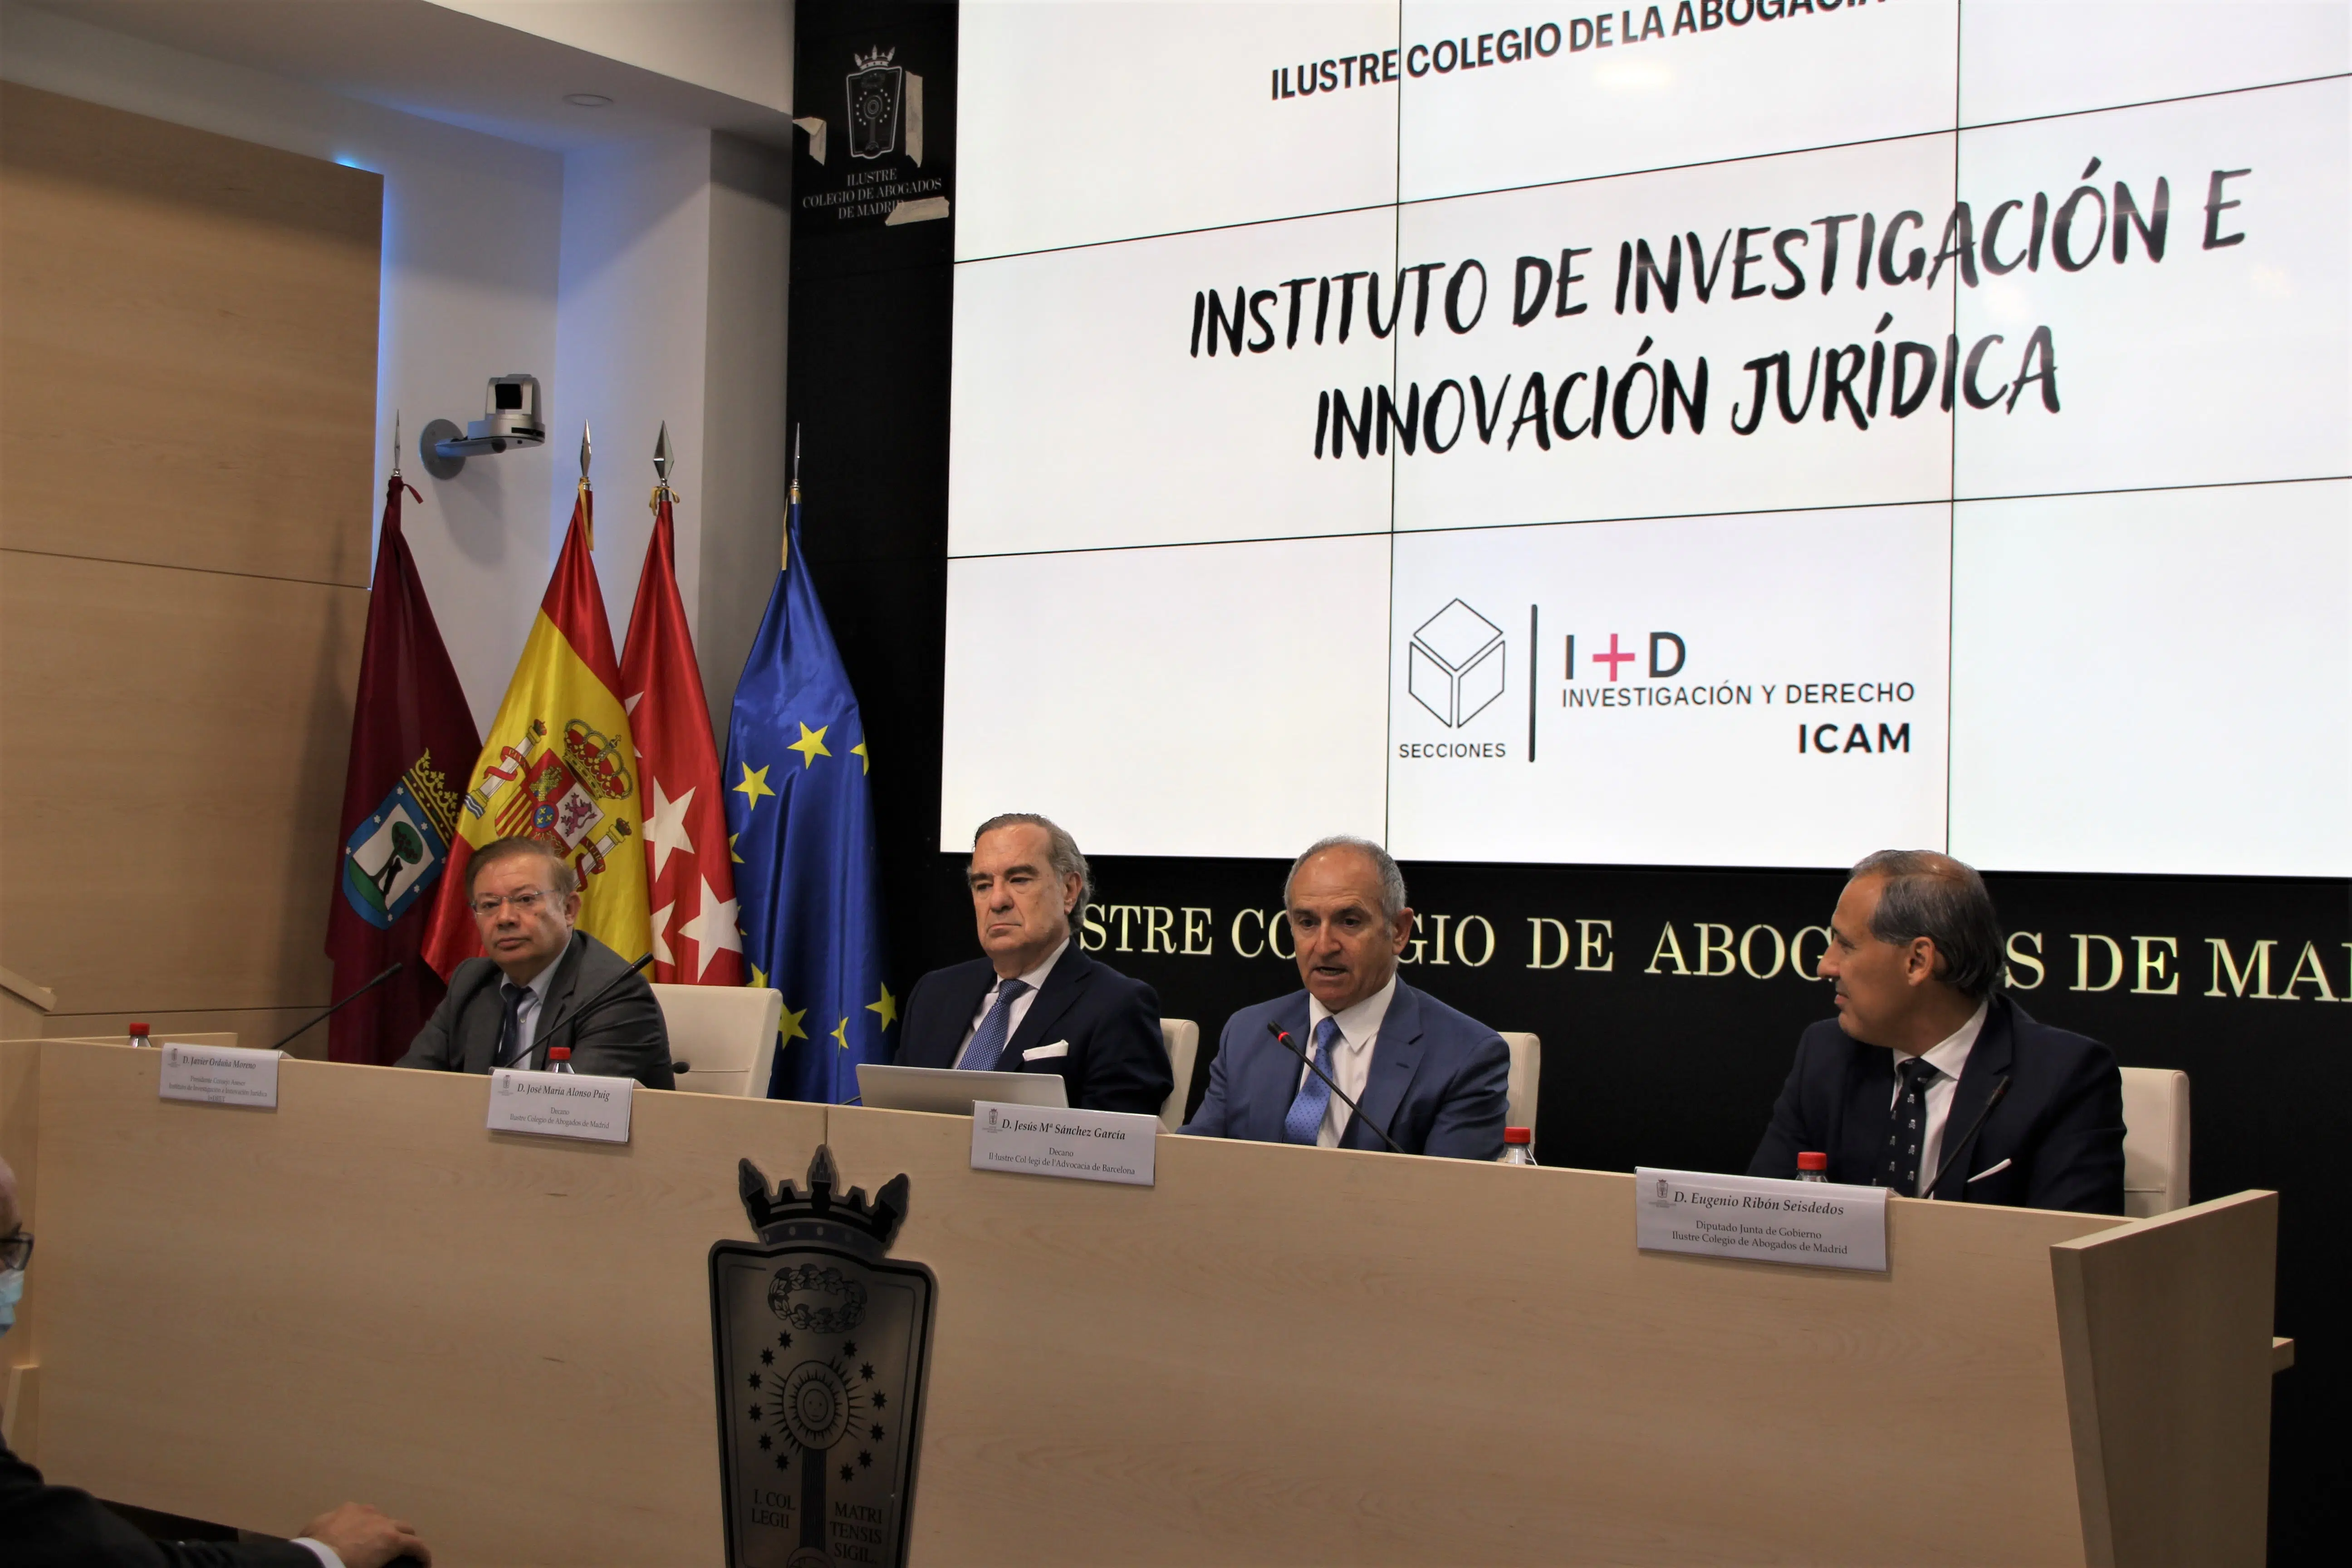 La Abogacía madrileña se sube al tren de la innovación e investigación jurídica con la creación del Instituto I+D ICAM